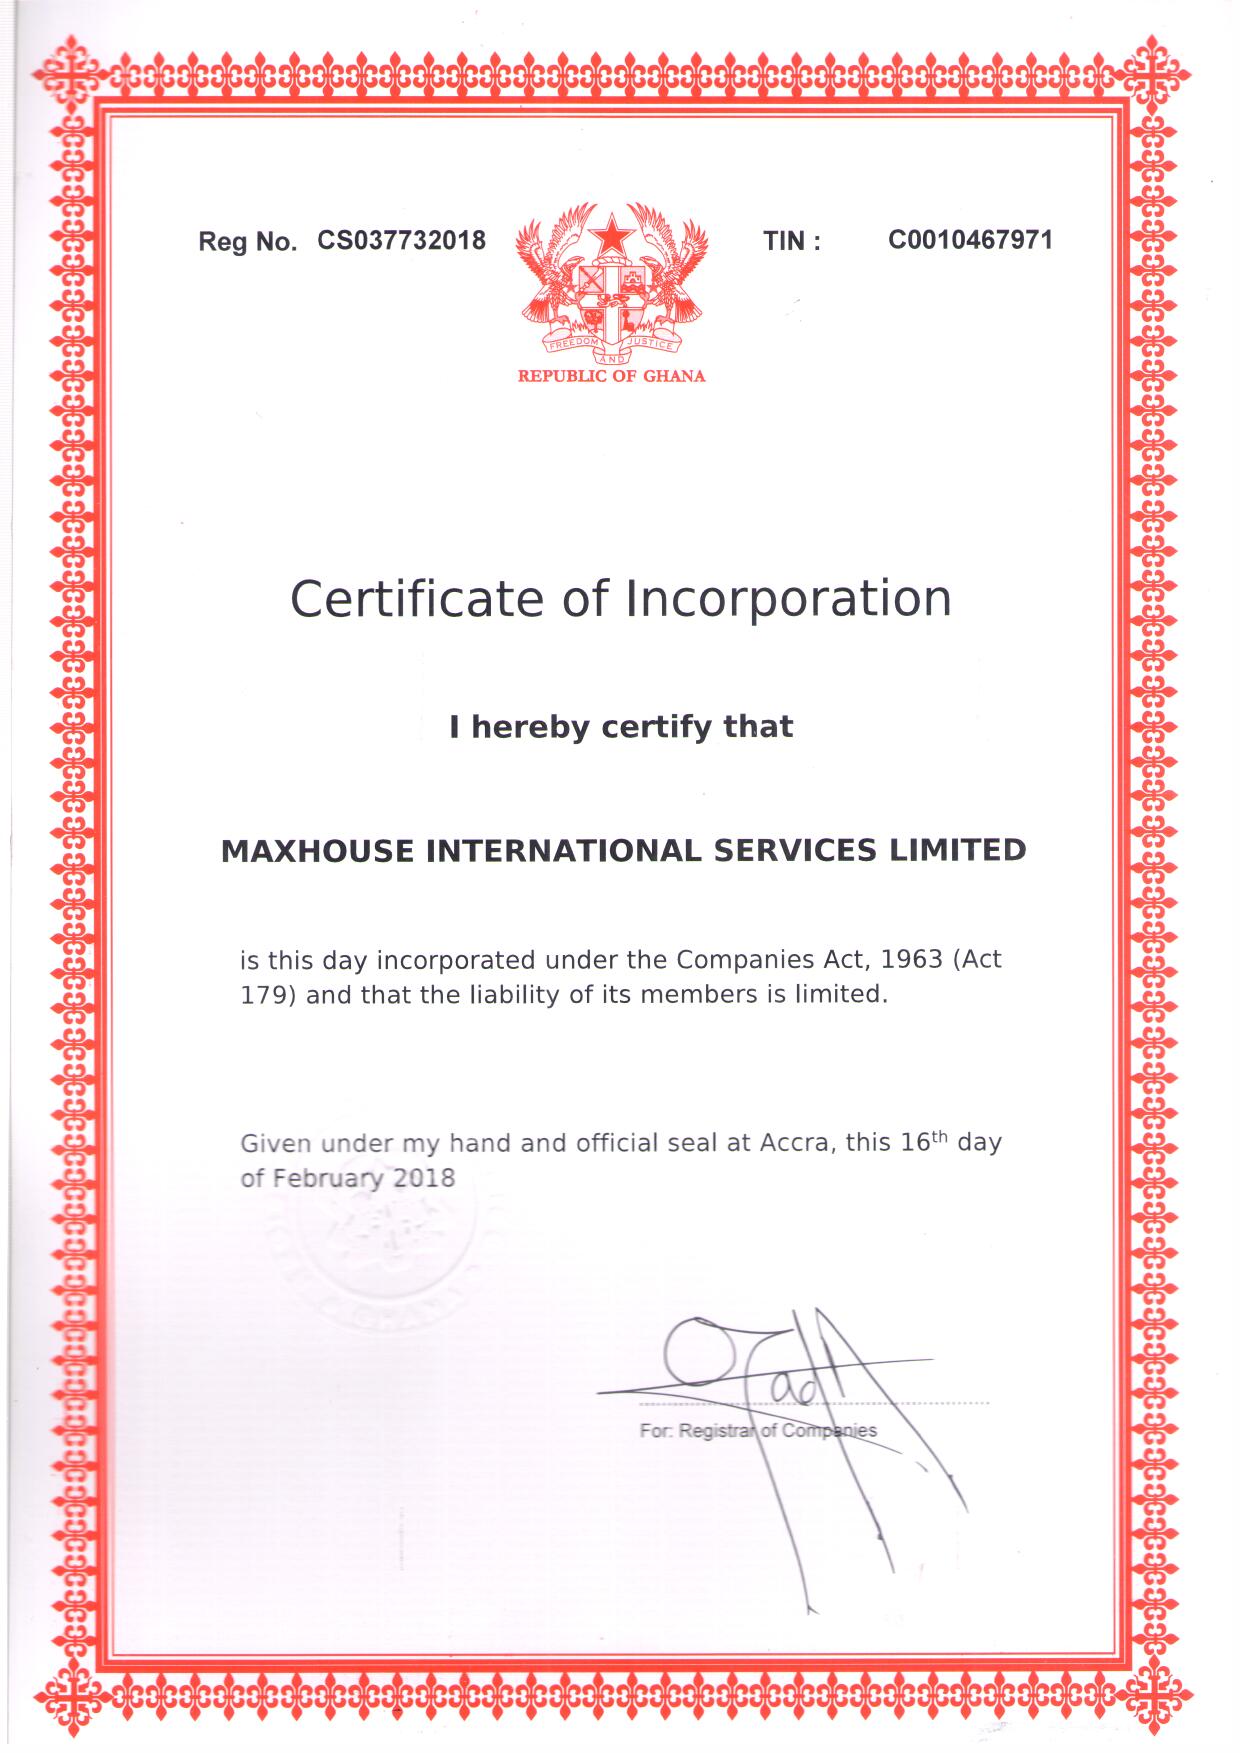 MaxHouse Ghana Branch